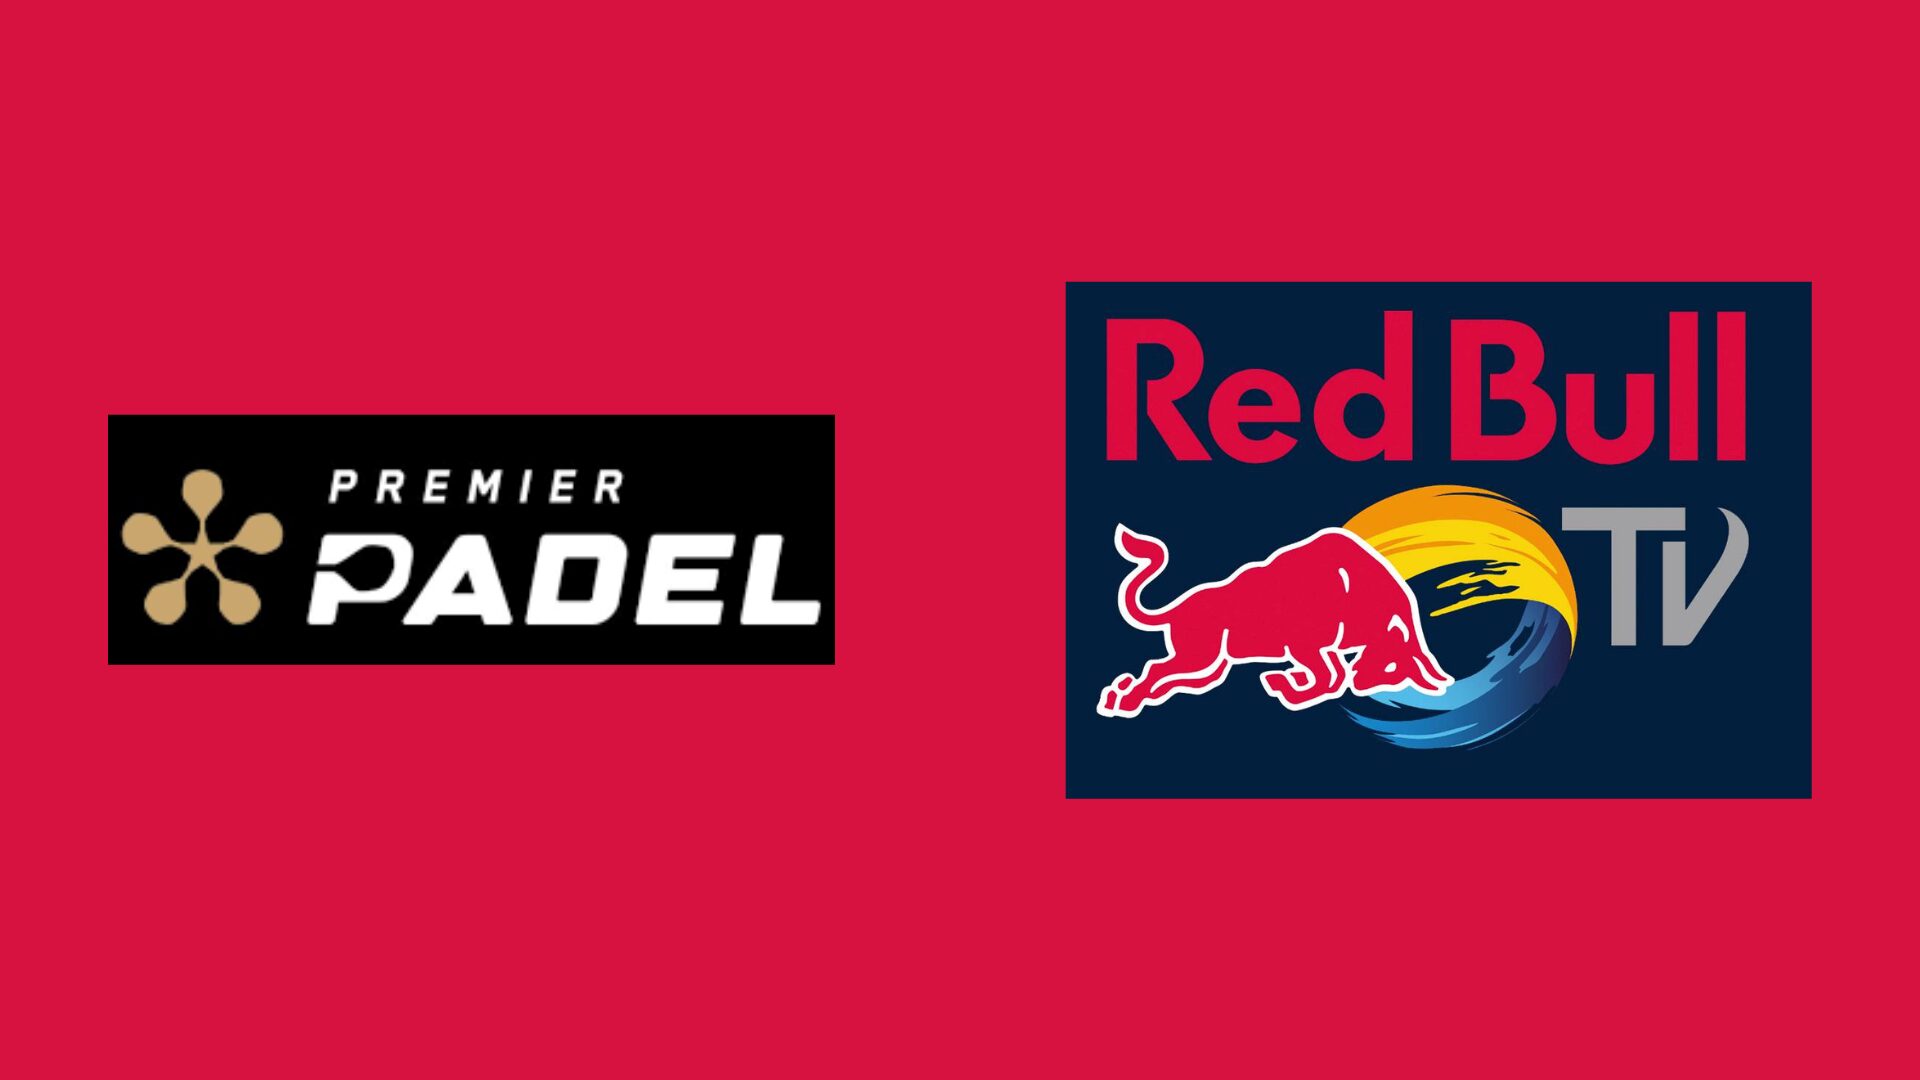 Uma parceria entre Premier Padel e Red Bull TV pela transmissão dos jogos!